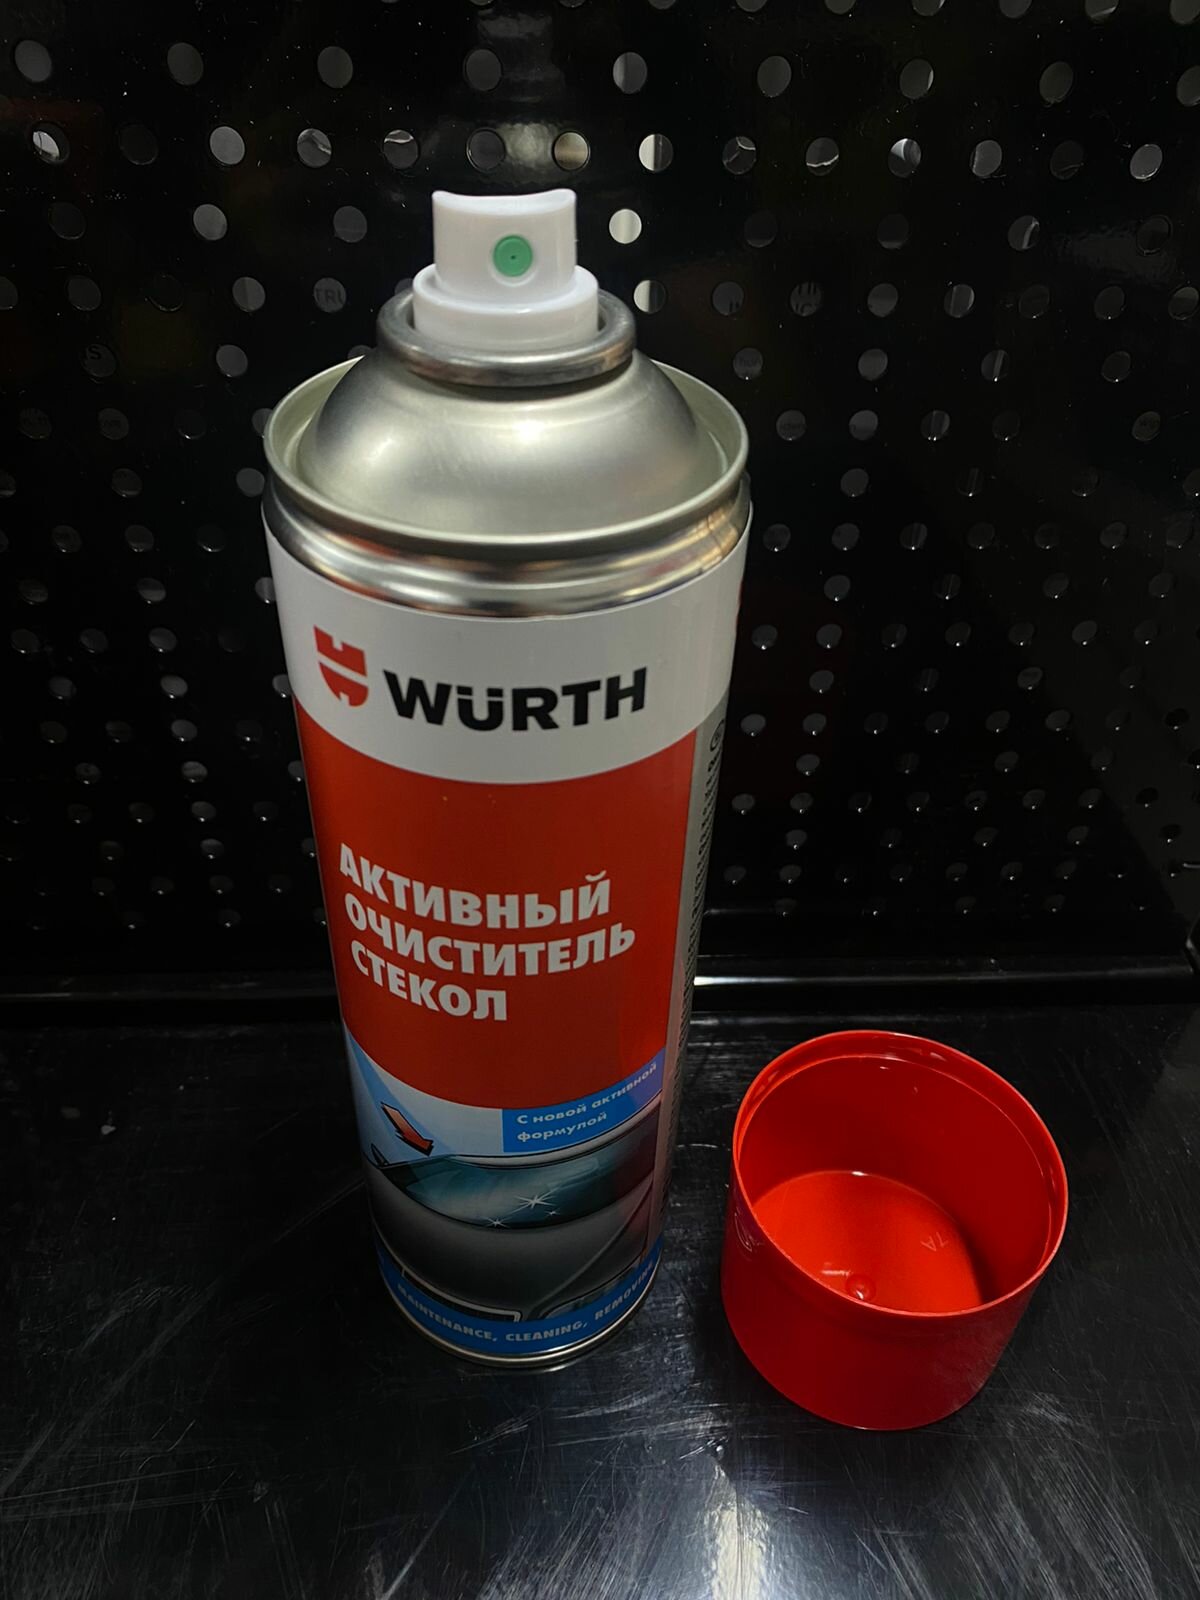 Спрей очиститель для стекла Wurth AKTIV (089025 053) 500мл